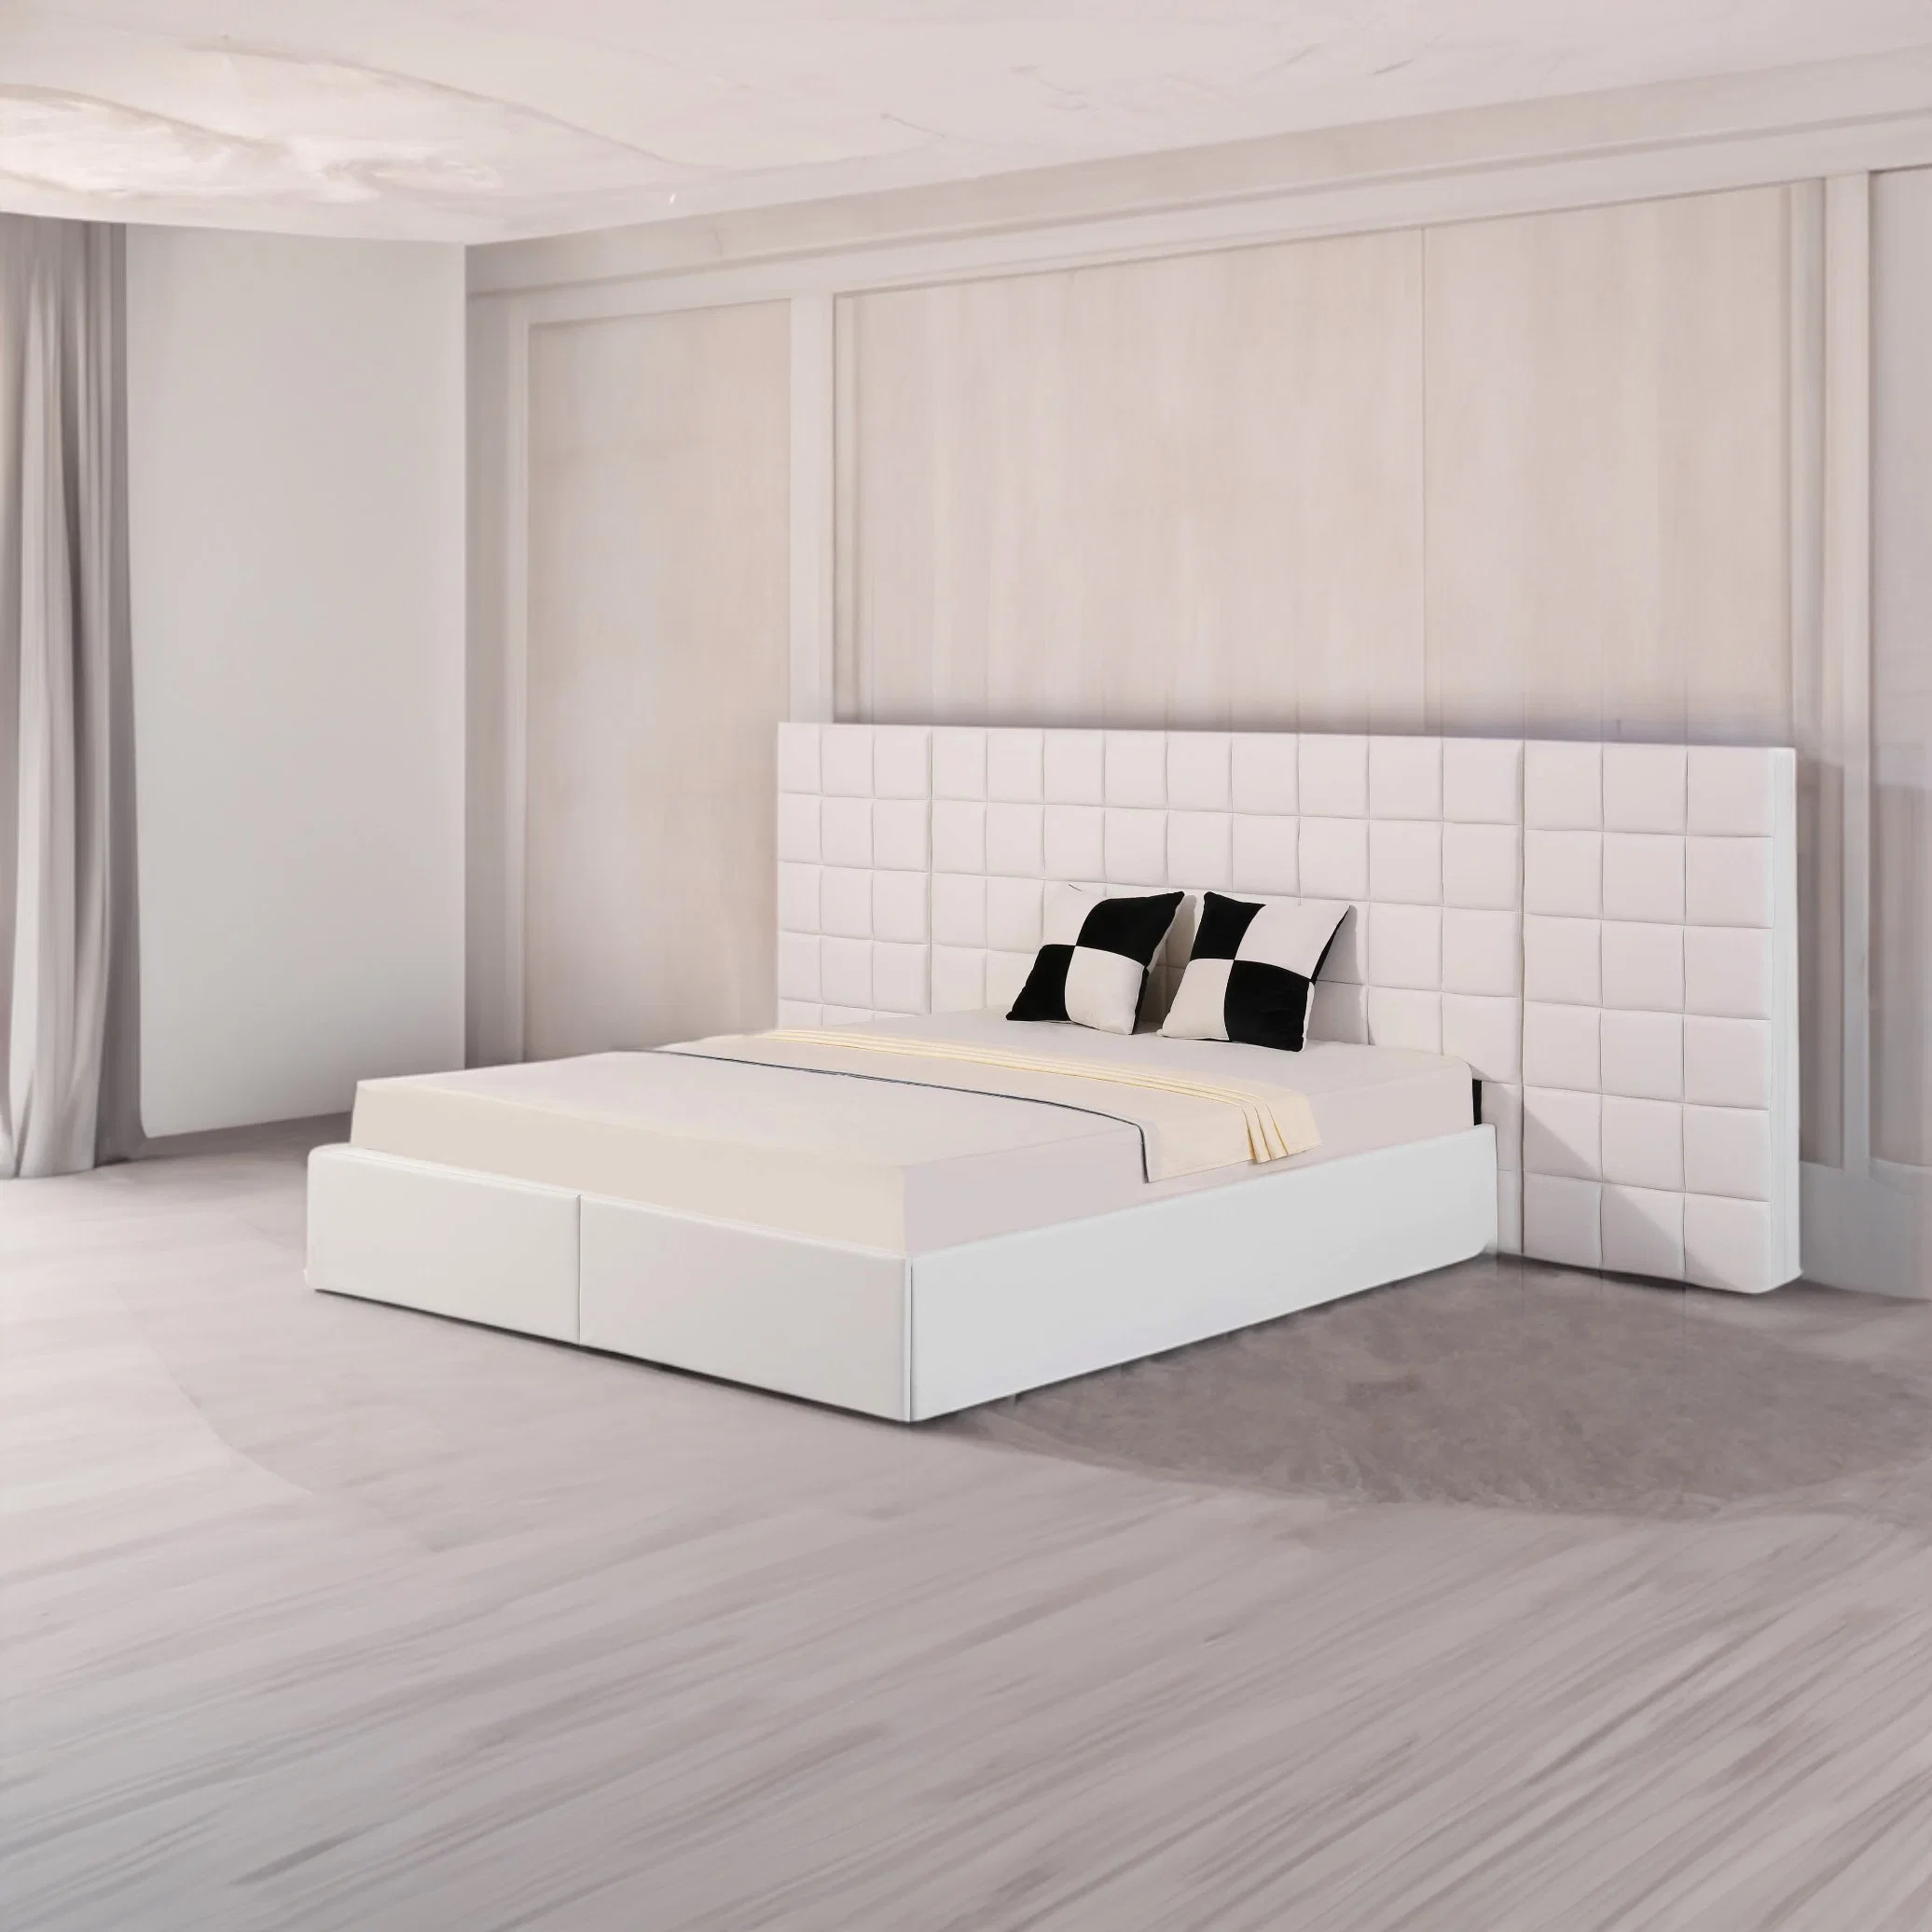 Huayang Modern Hot Sale Design Home Furniture Bedroom Bed